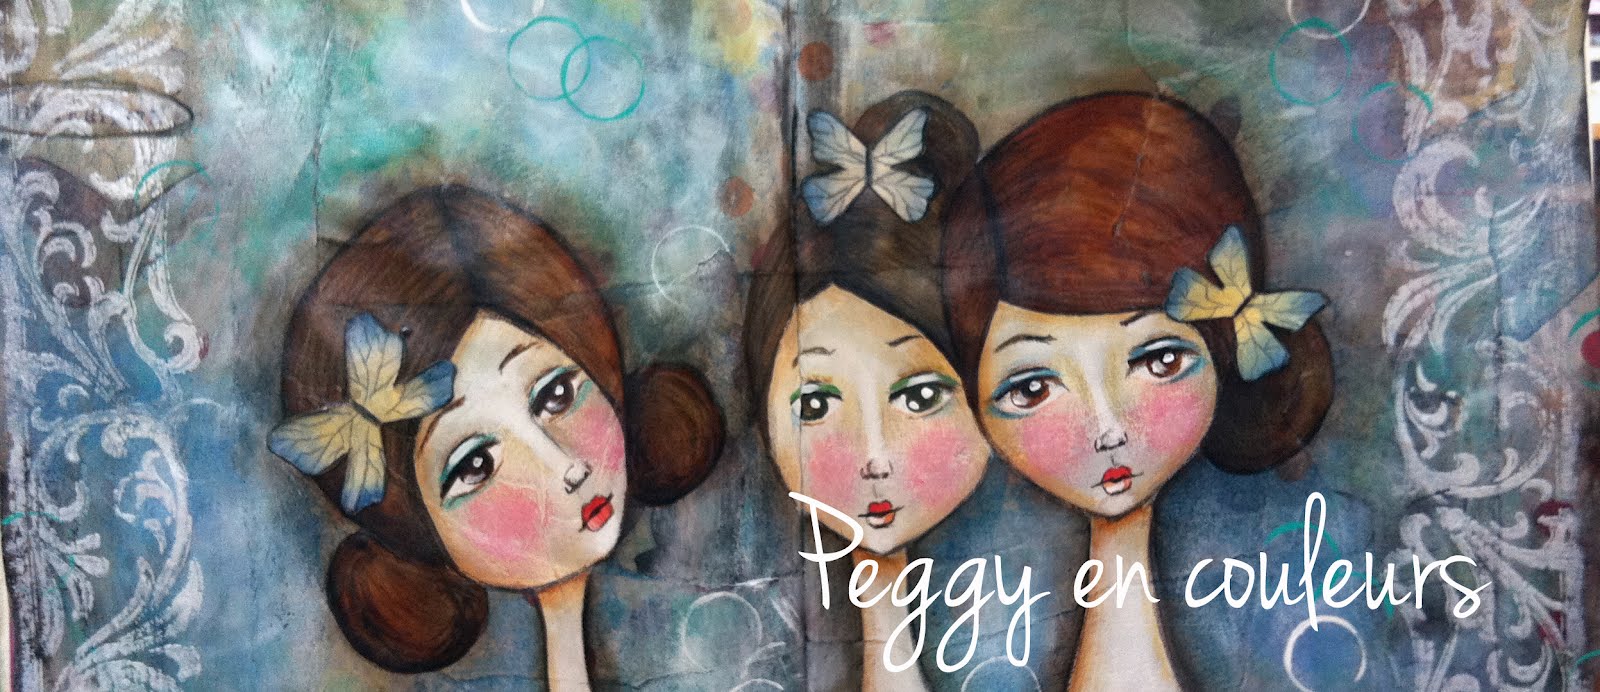 Peggy en couleurs